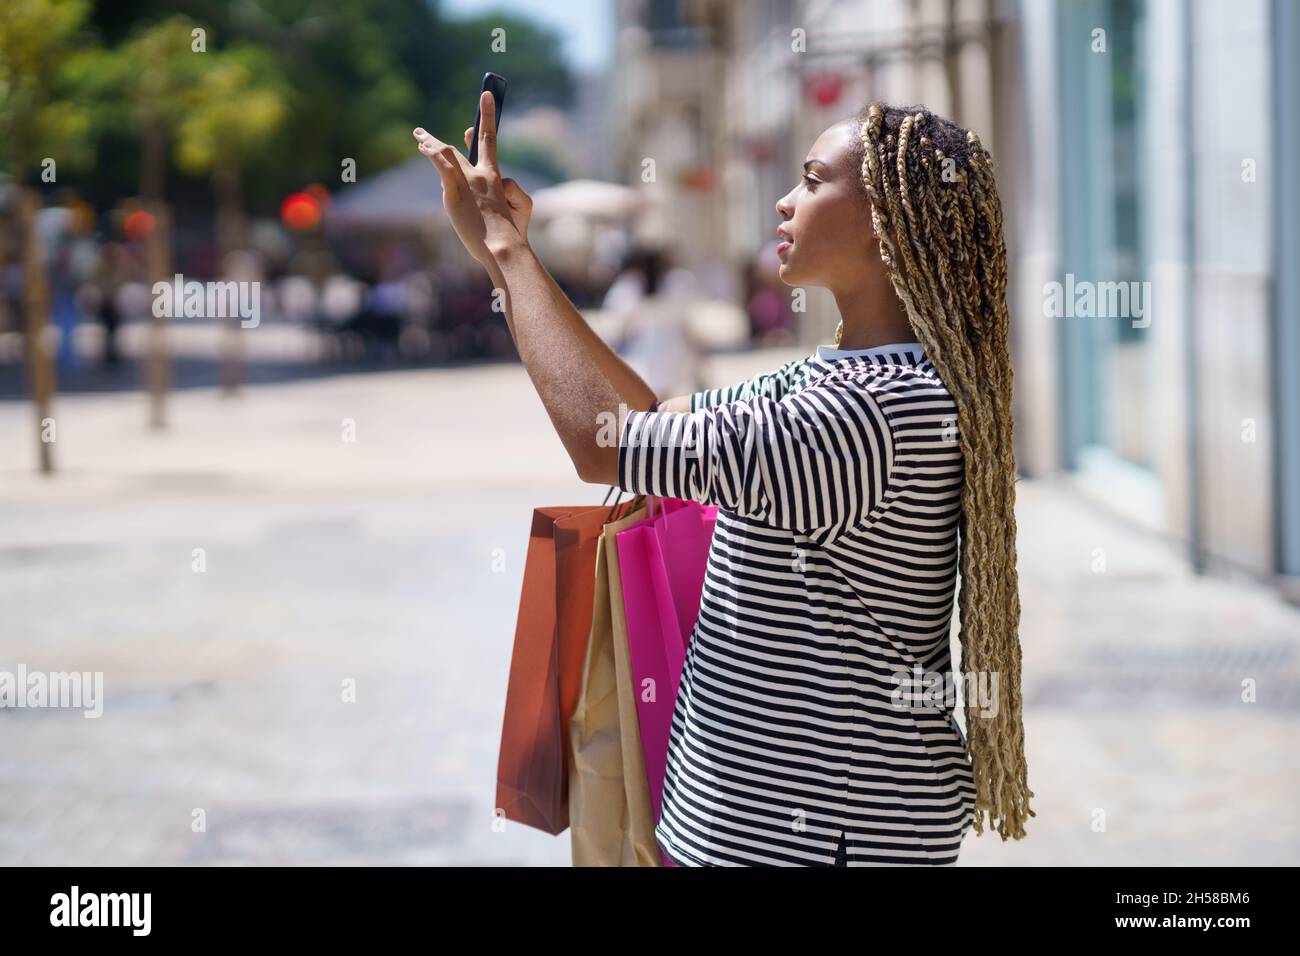 Schwarzes Mädchen fotografiert etwas in einer Einkaufsstraße mit ihrem Smartphone. Stockfoto